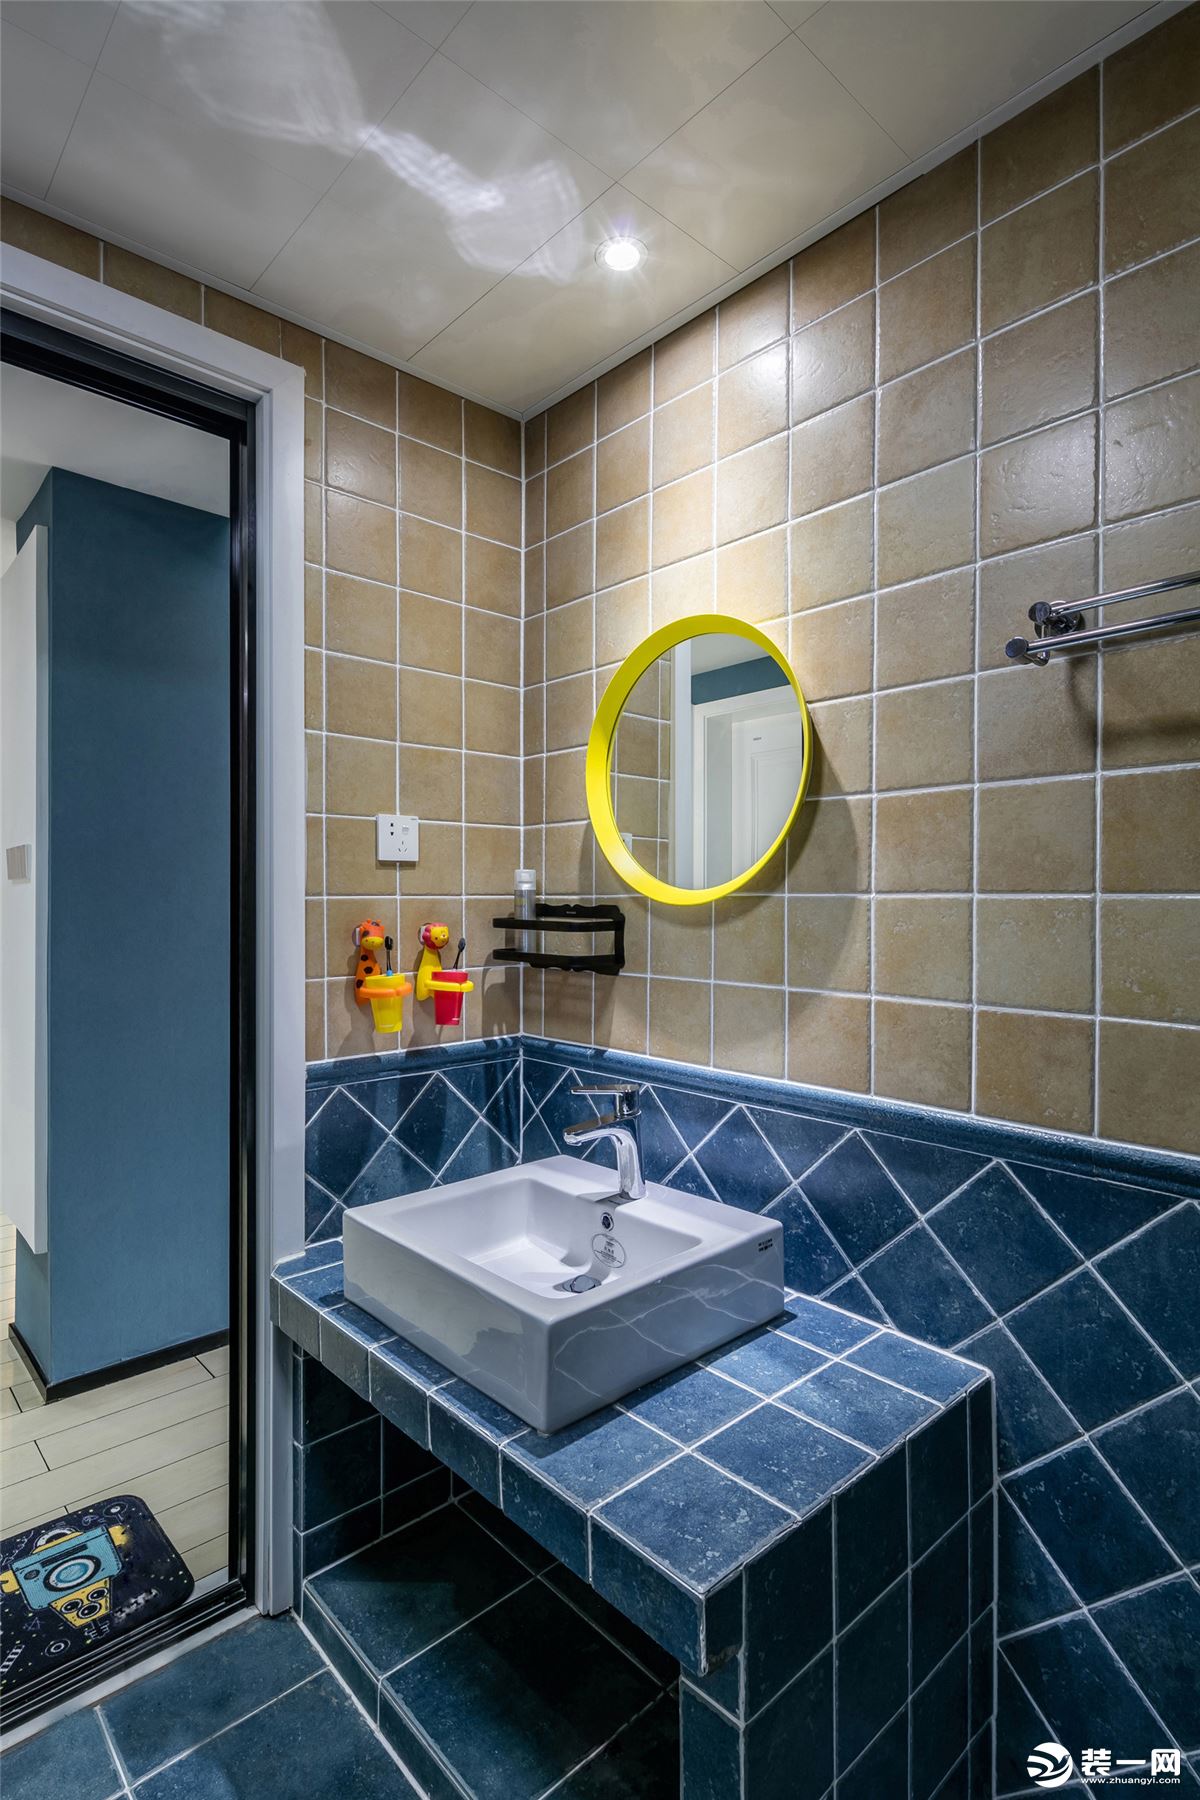 将浴室一分为二，干湿分开，就可保持沐浴之外的场地干燥卫生，维持浴室整体环境的整洁美观。